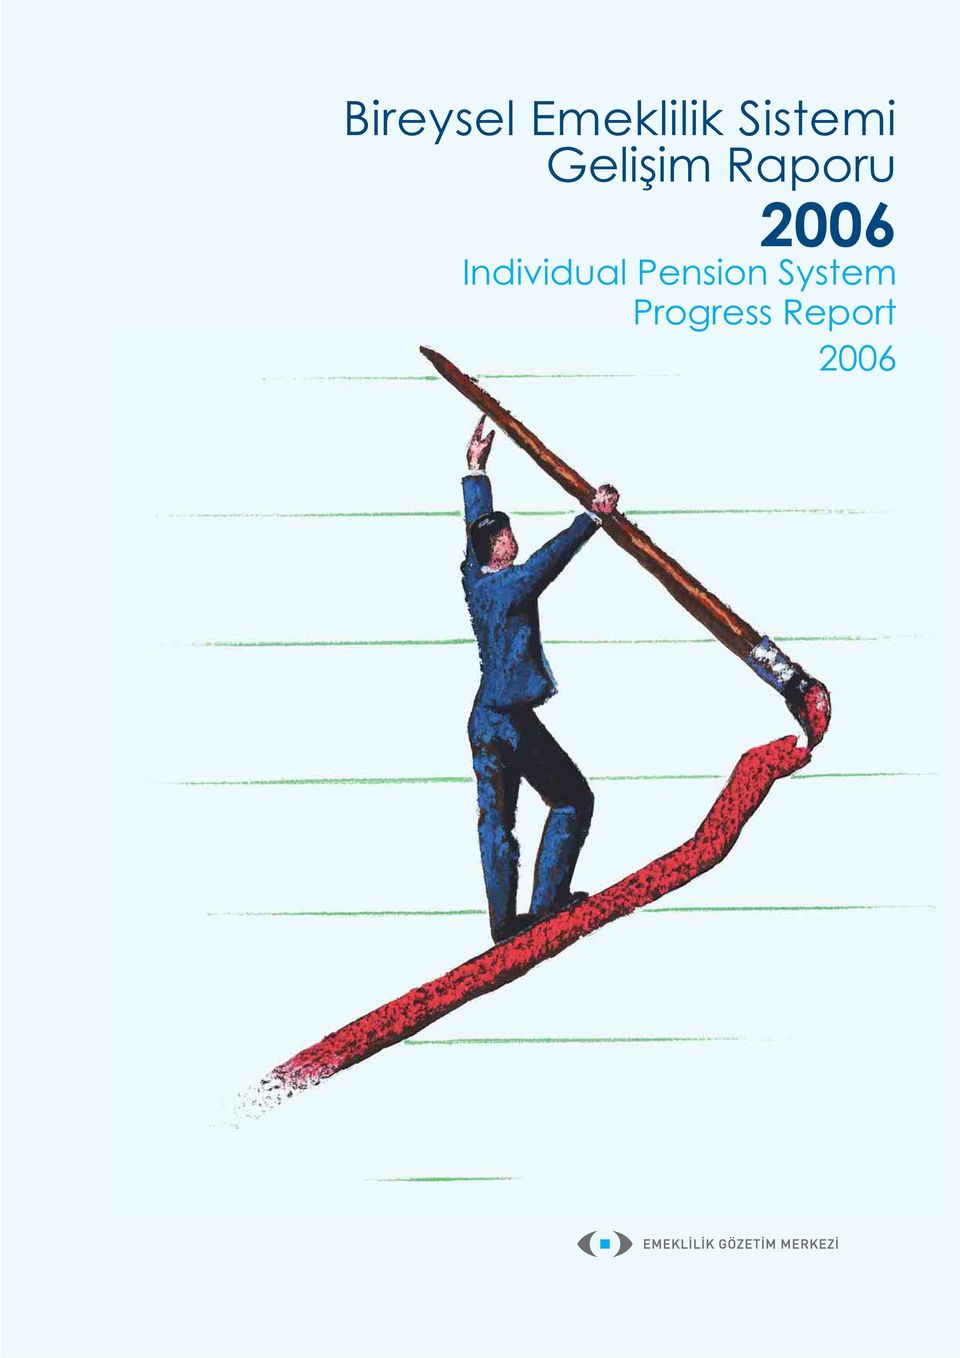 2006 Individual Pension